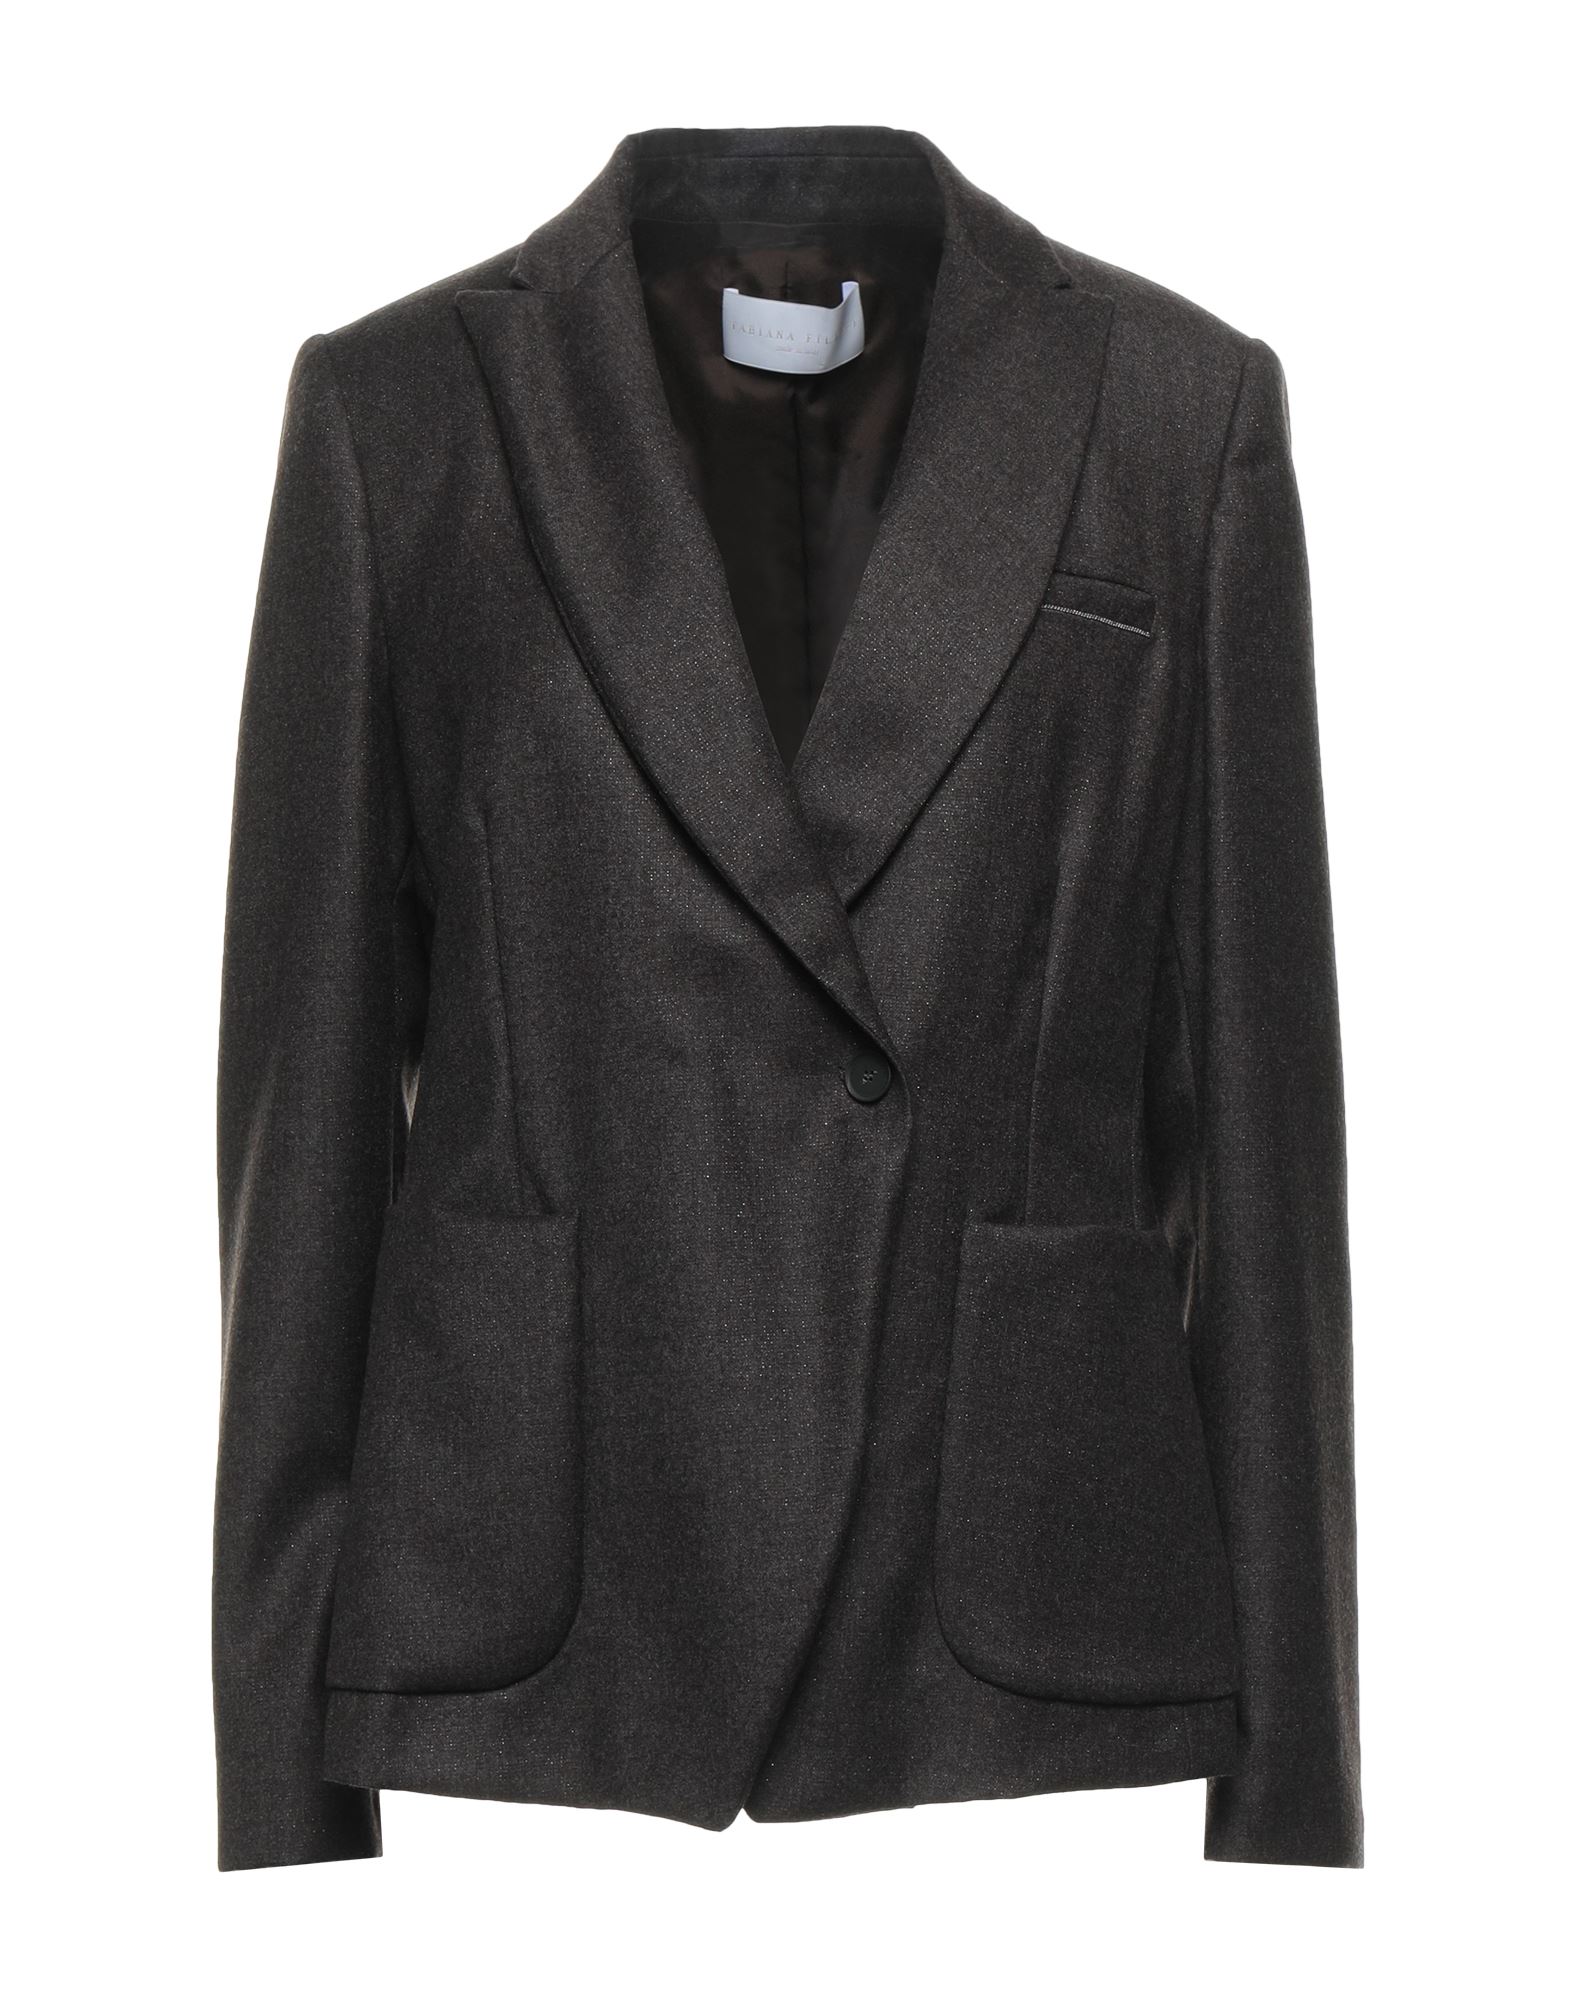 Fabiana Filippi Suit Jackets In Dark Brown